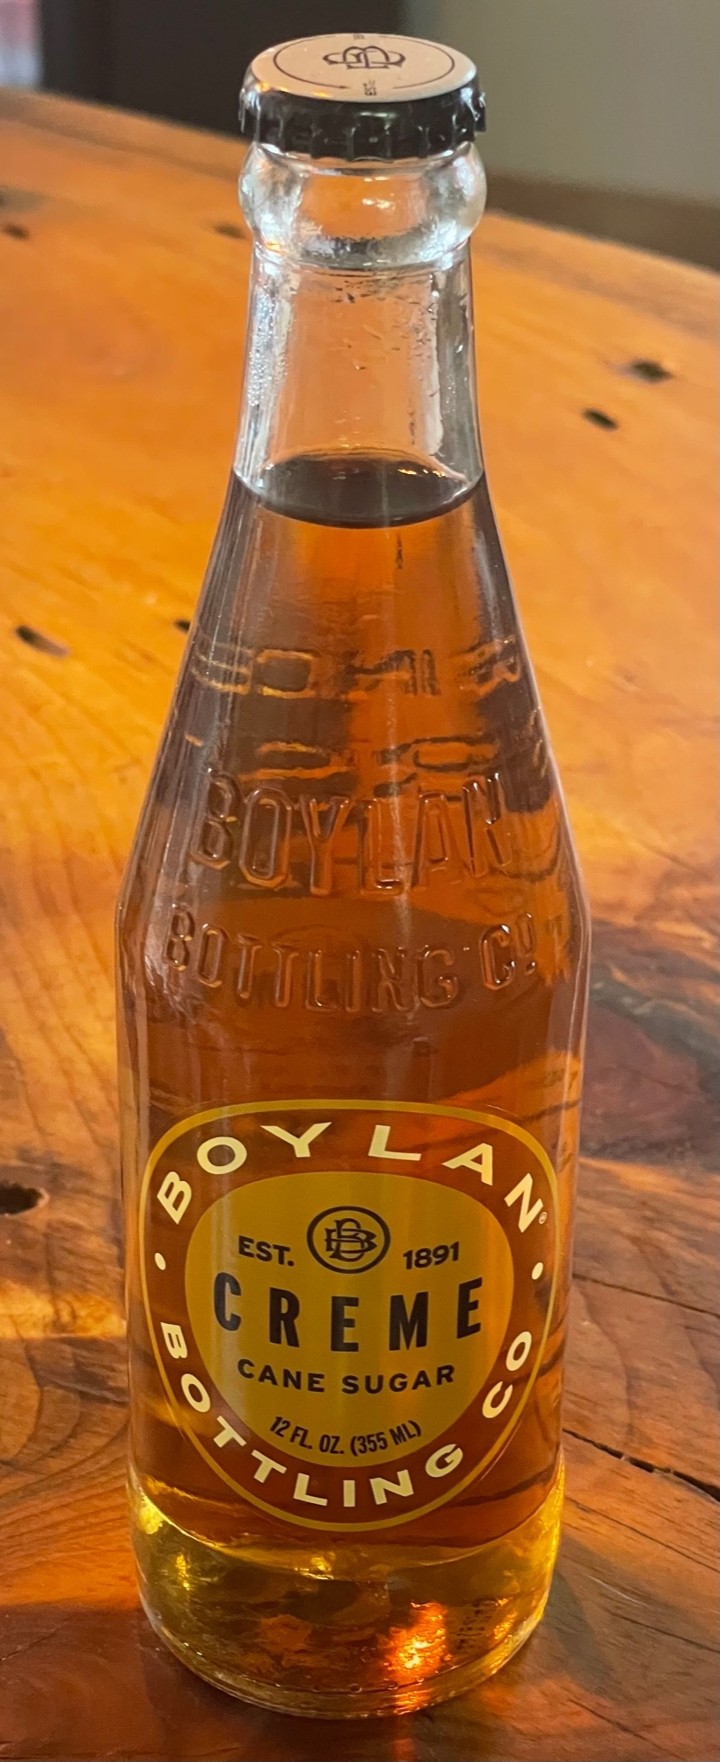 Boylans Cream Soda